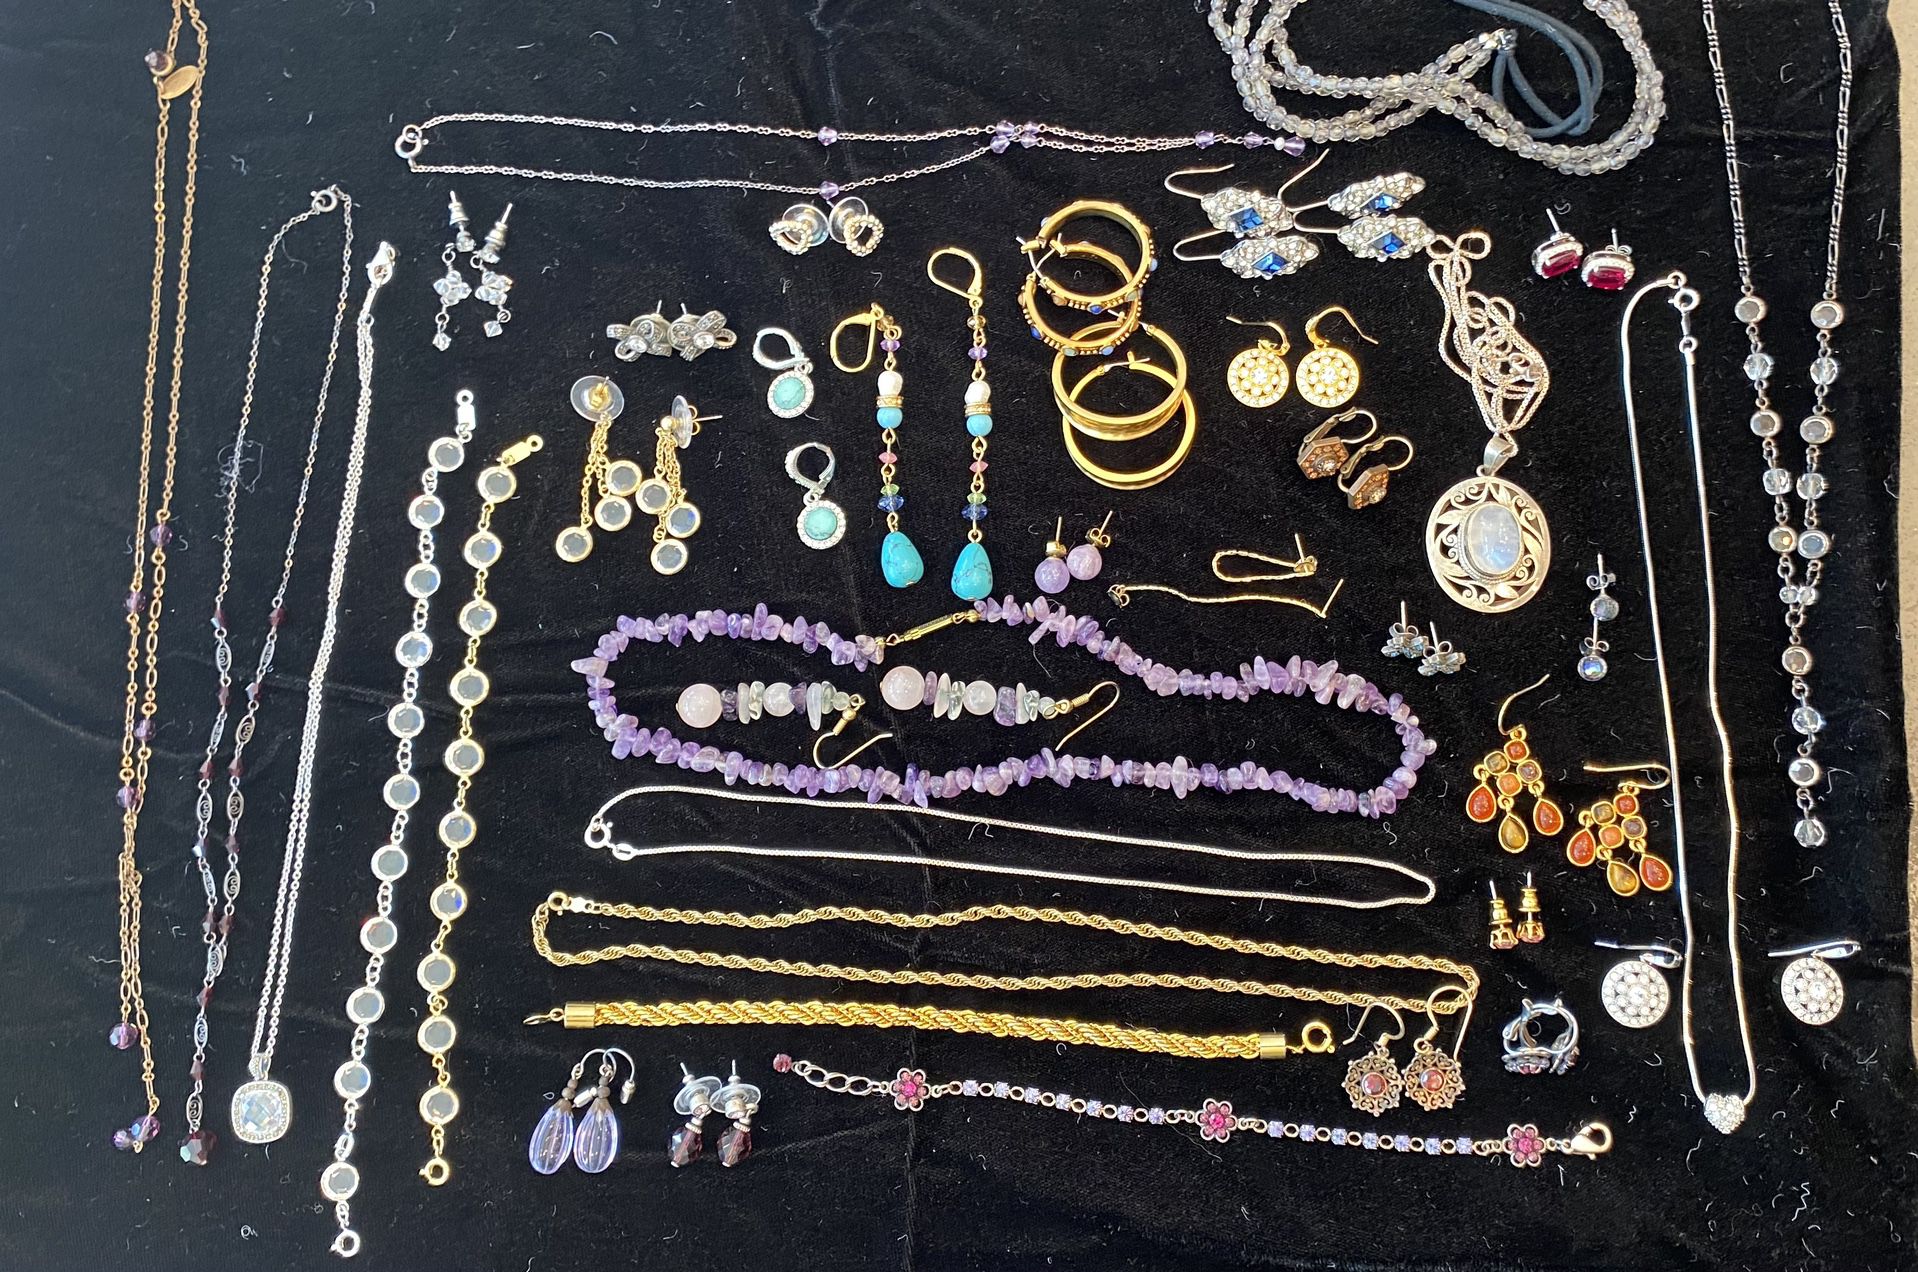 Miscellaneous Costume and Semi Precious Jewelry 